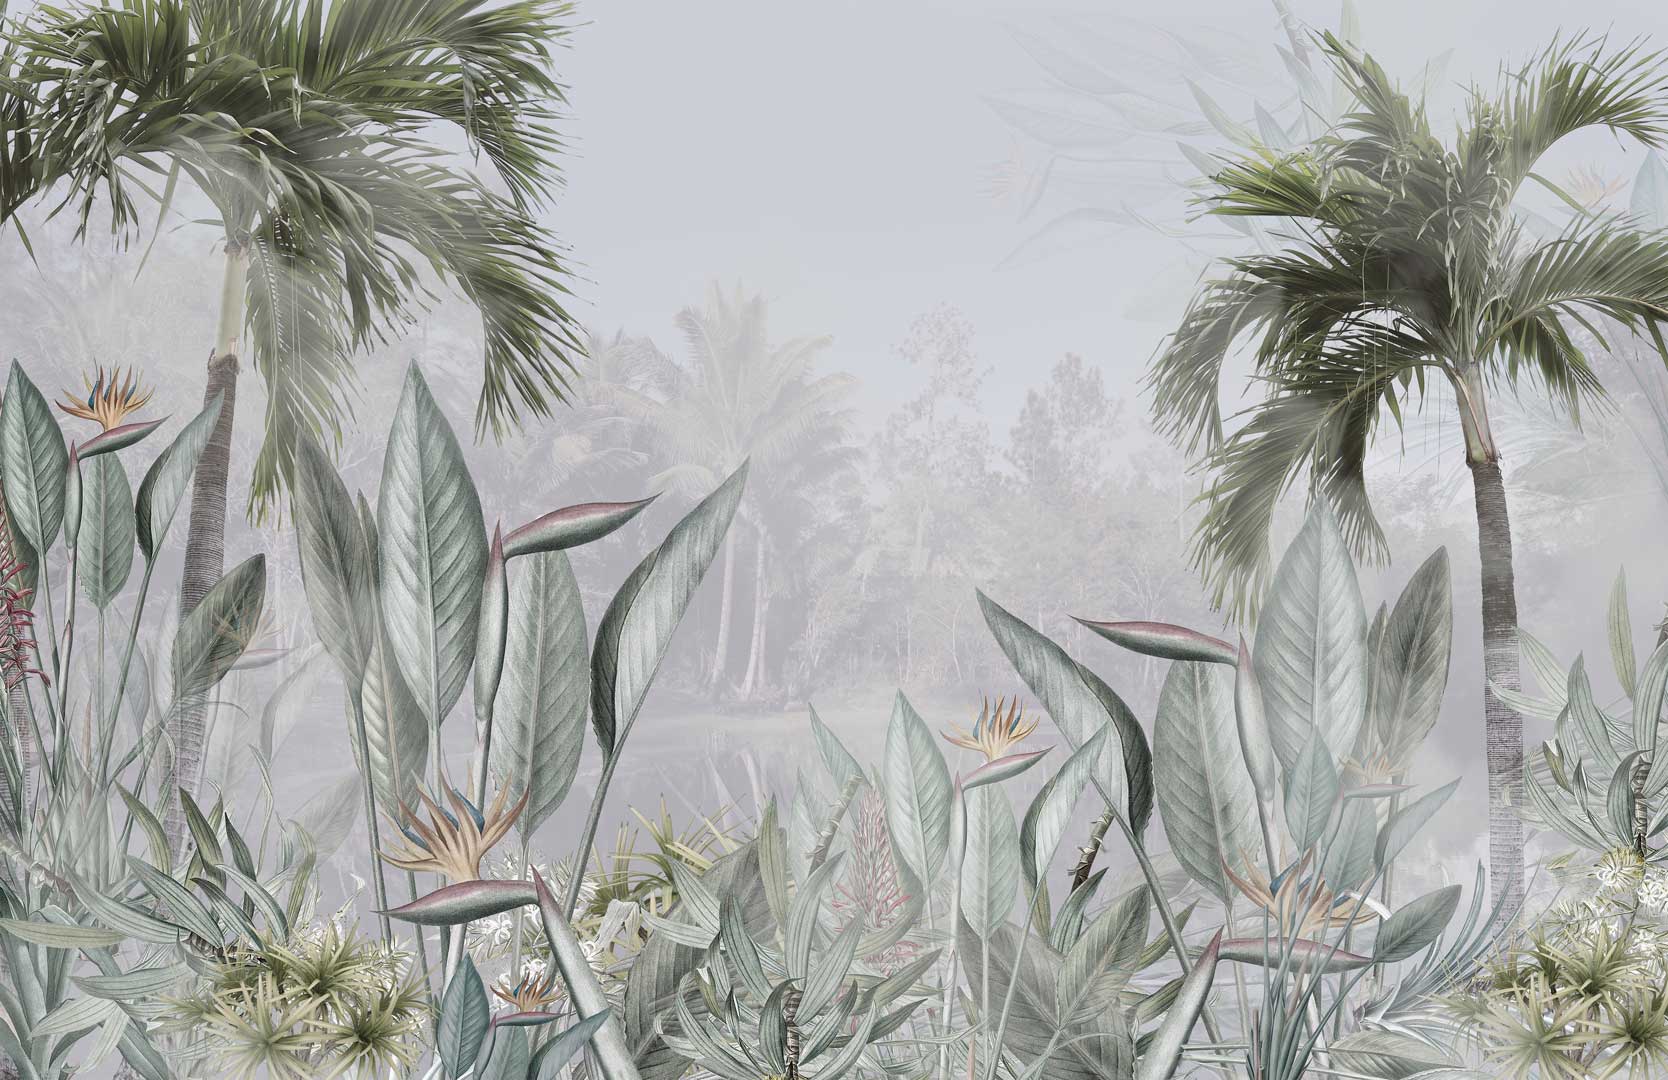 Tapeta džungľa (jungle), banánové a palmové listy, zelená - Dekoori obrázok 1